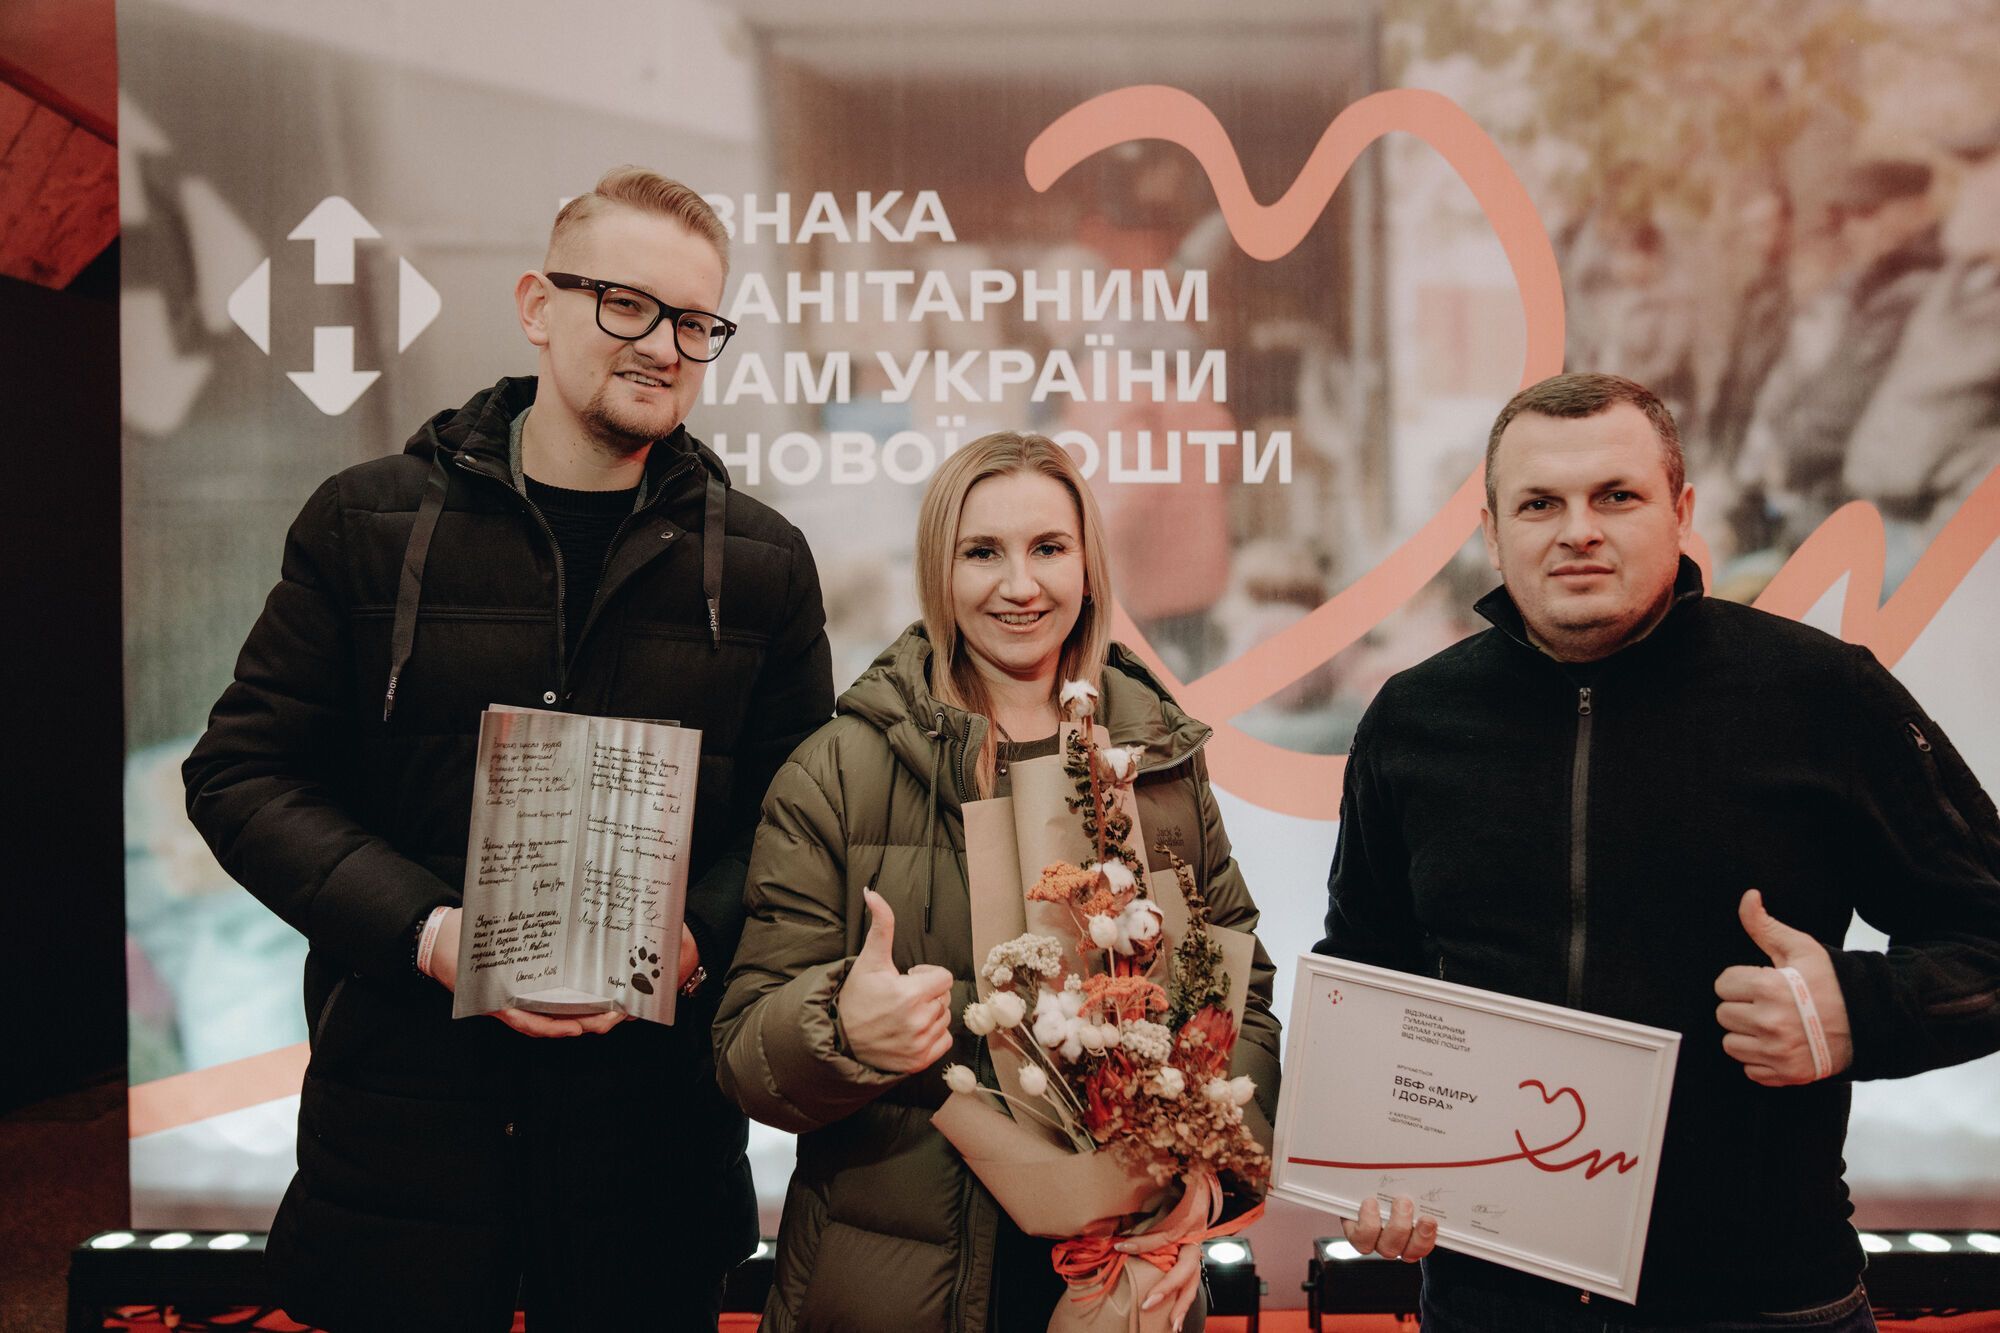 Гуманітарні сили України: благодійні фонди та волонтери отримали спеціальну відзнаку за допомогу українцям під час війни